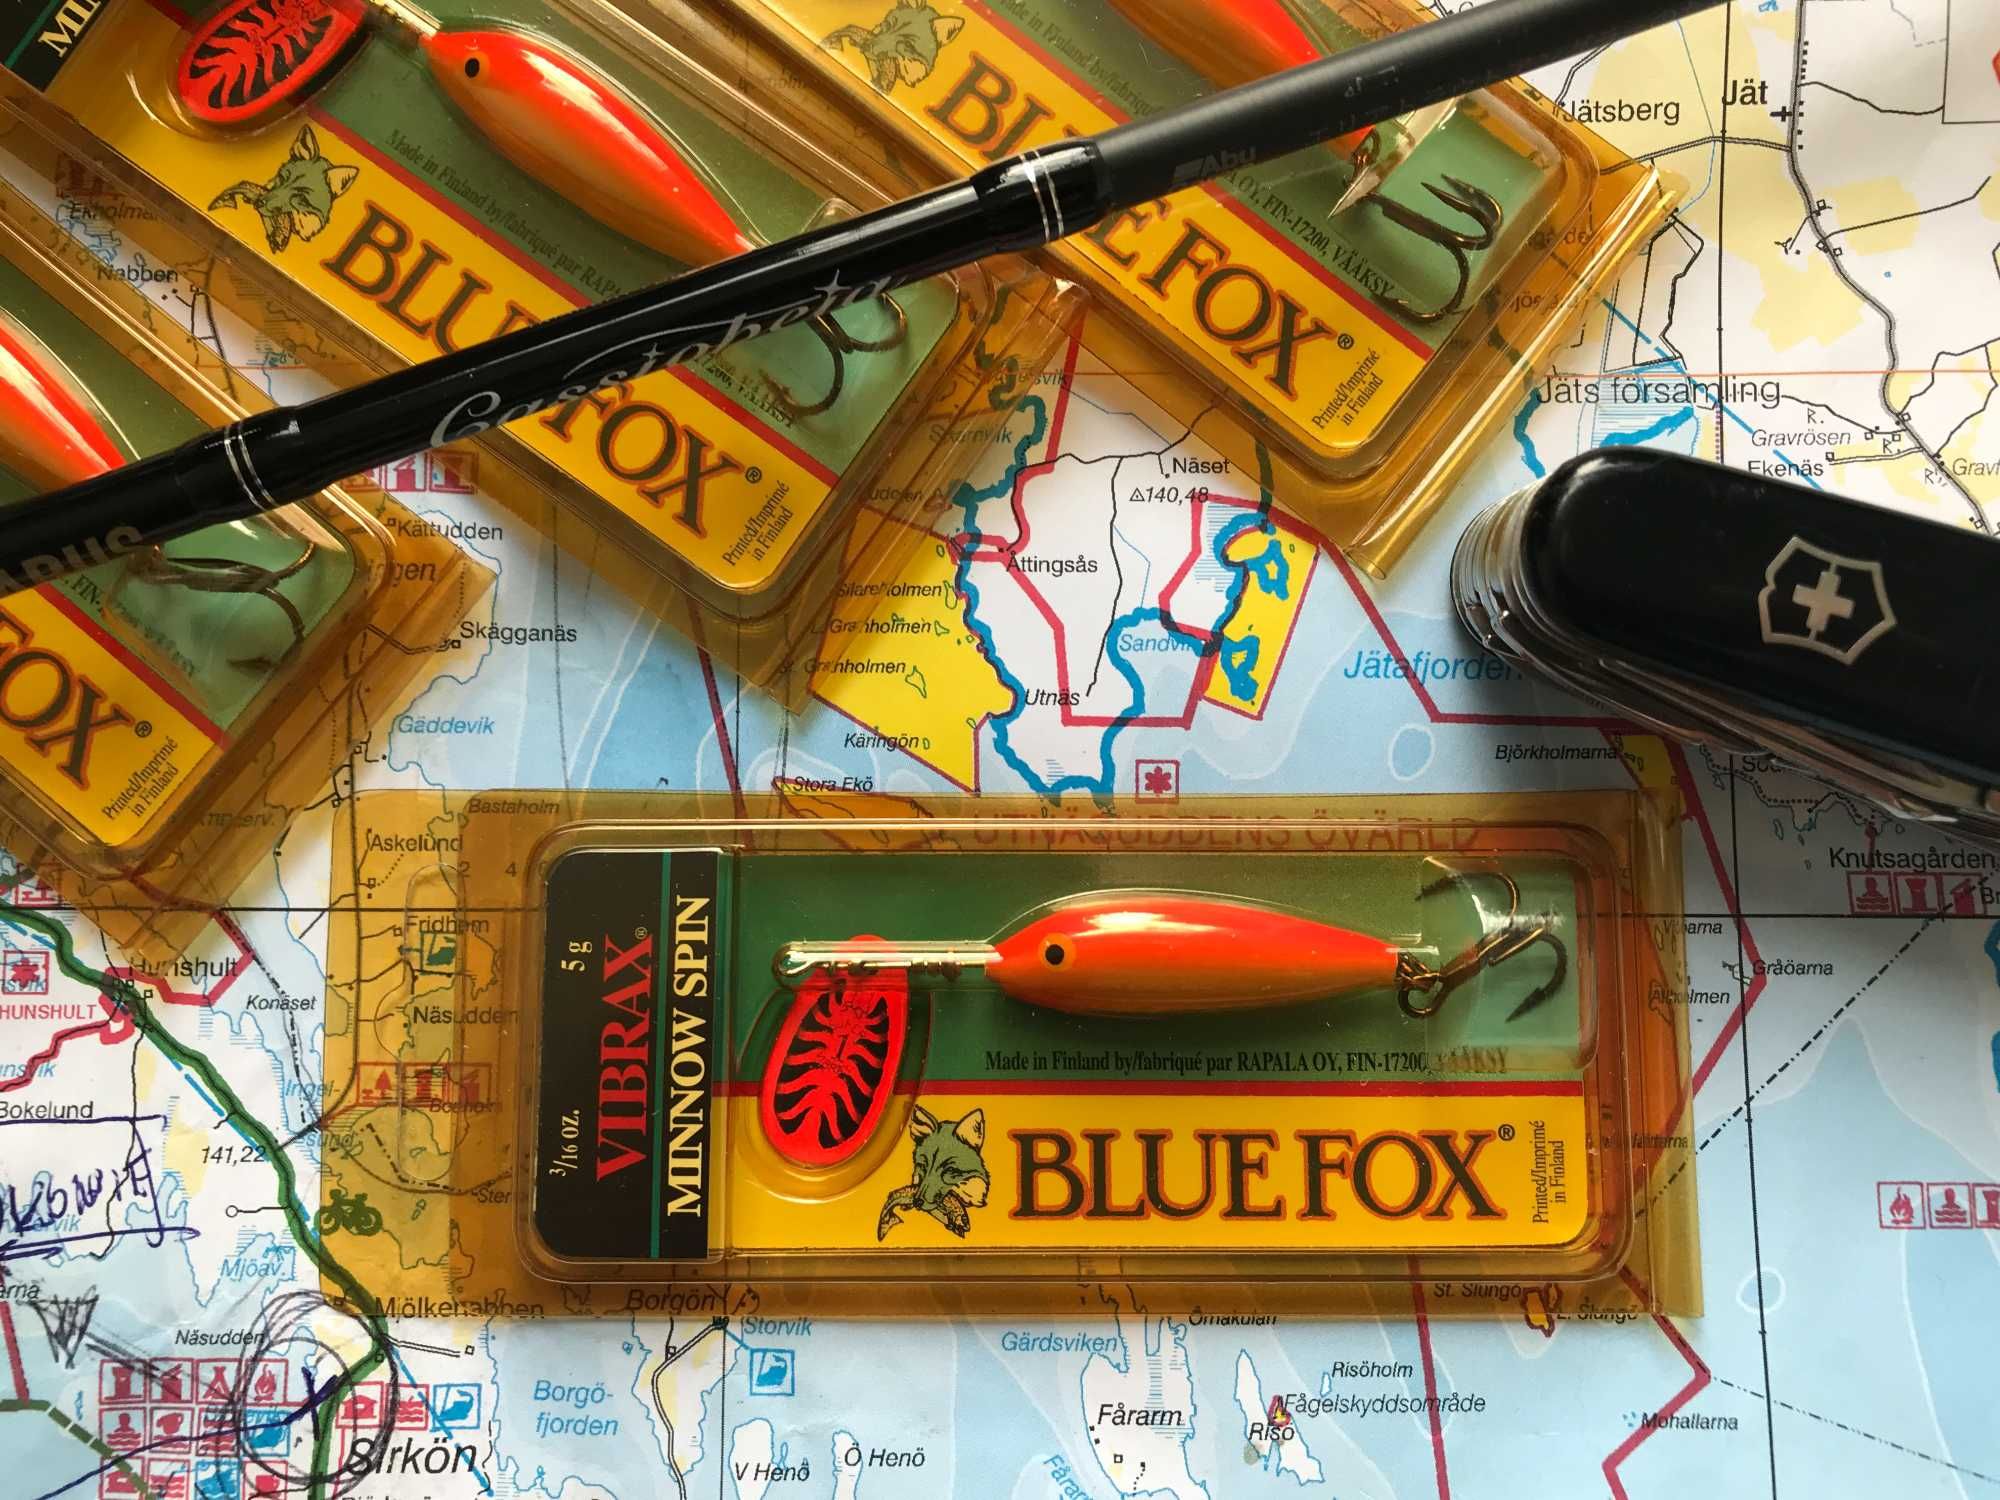 Przynęta Rapala Blue-Fox Minnow 5gr gold-orange fluo